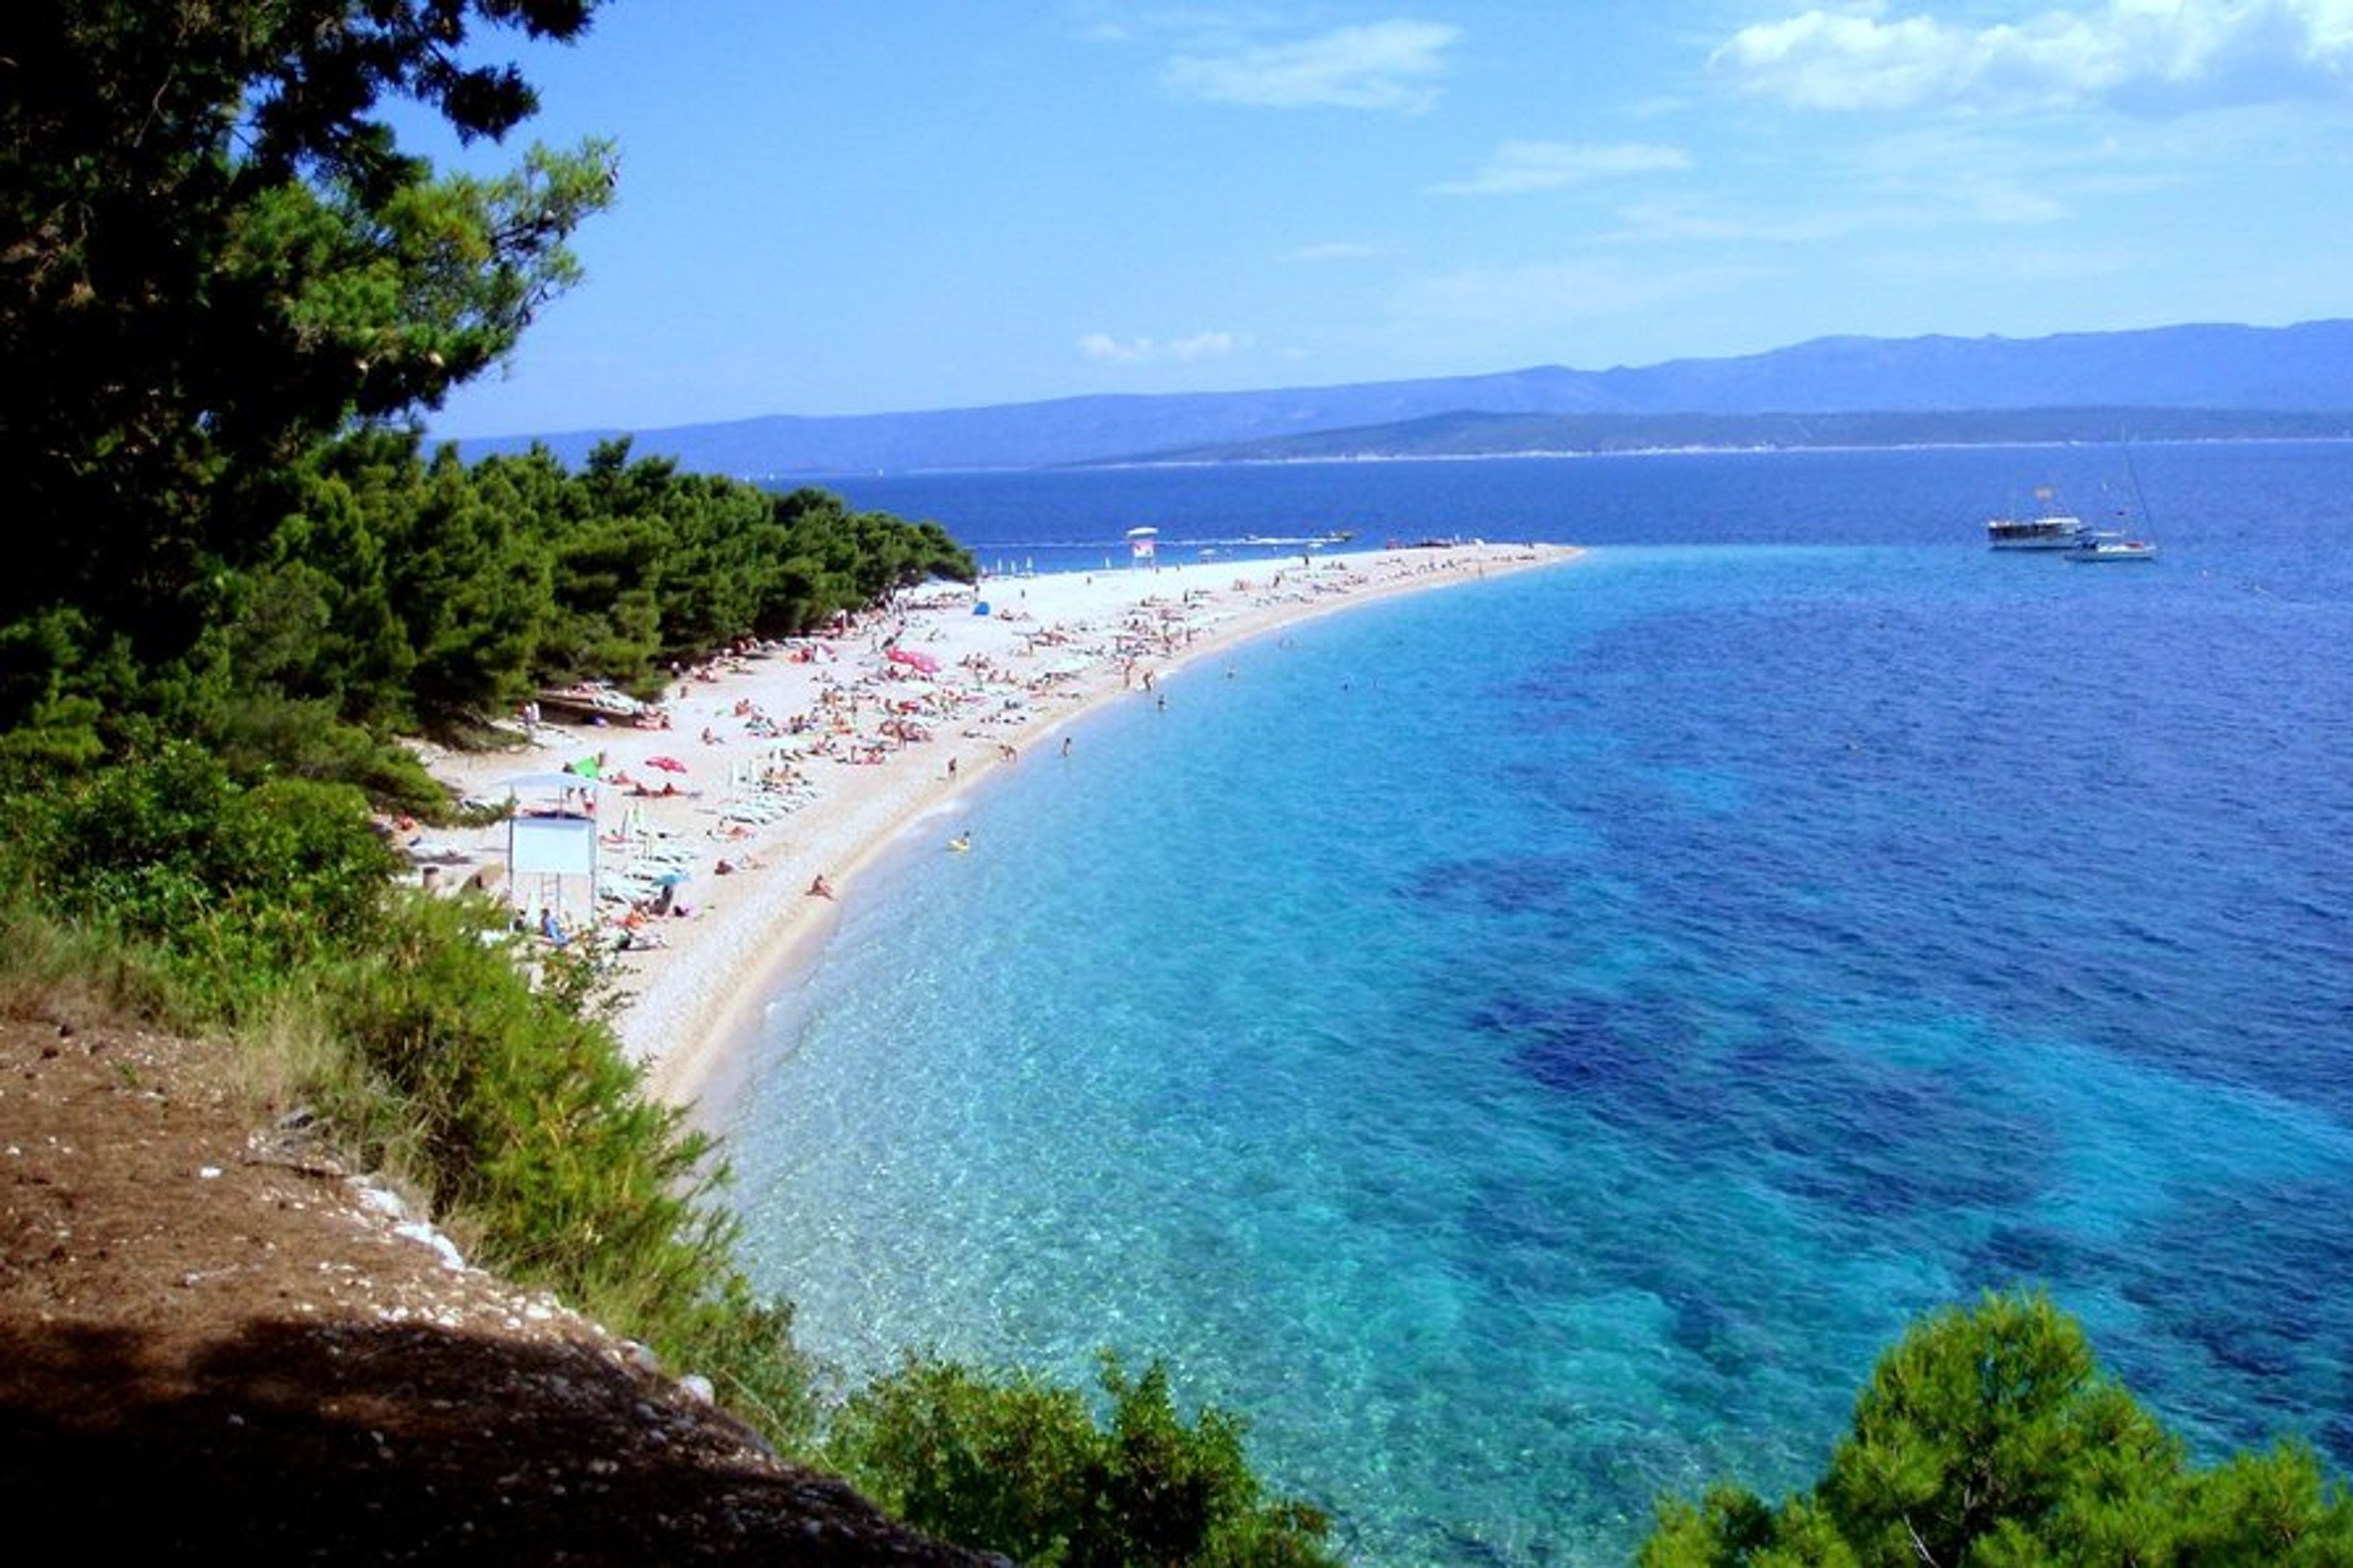 Zlatni Rat Beach, Bol. Most famous beach in Croatia.